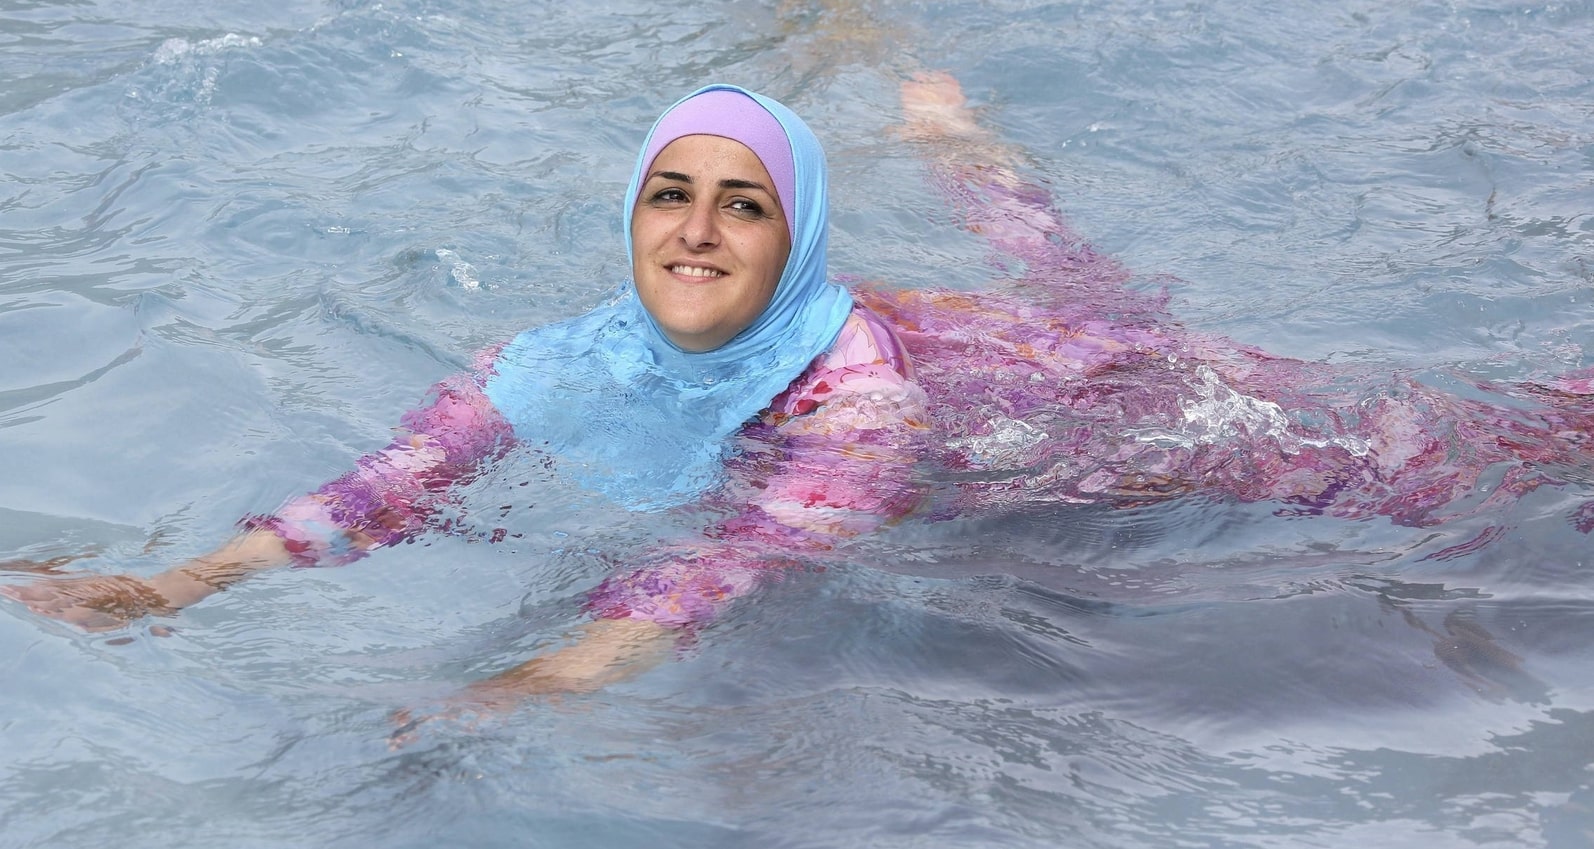 Mujer musulmana en una jornada de 'burkini' en una piscina de Francia